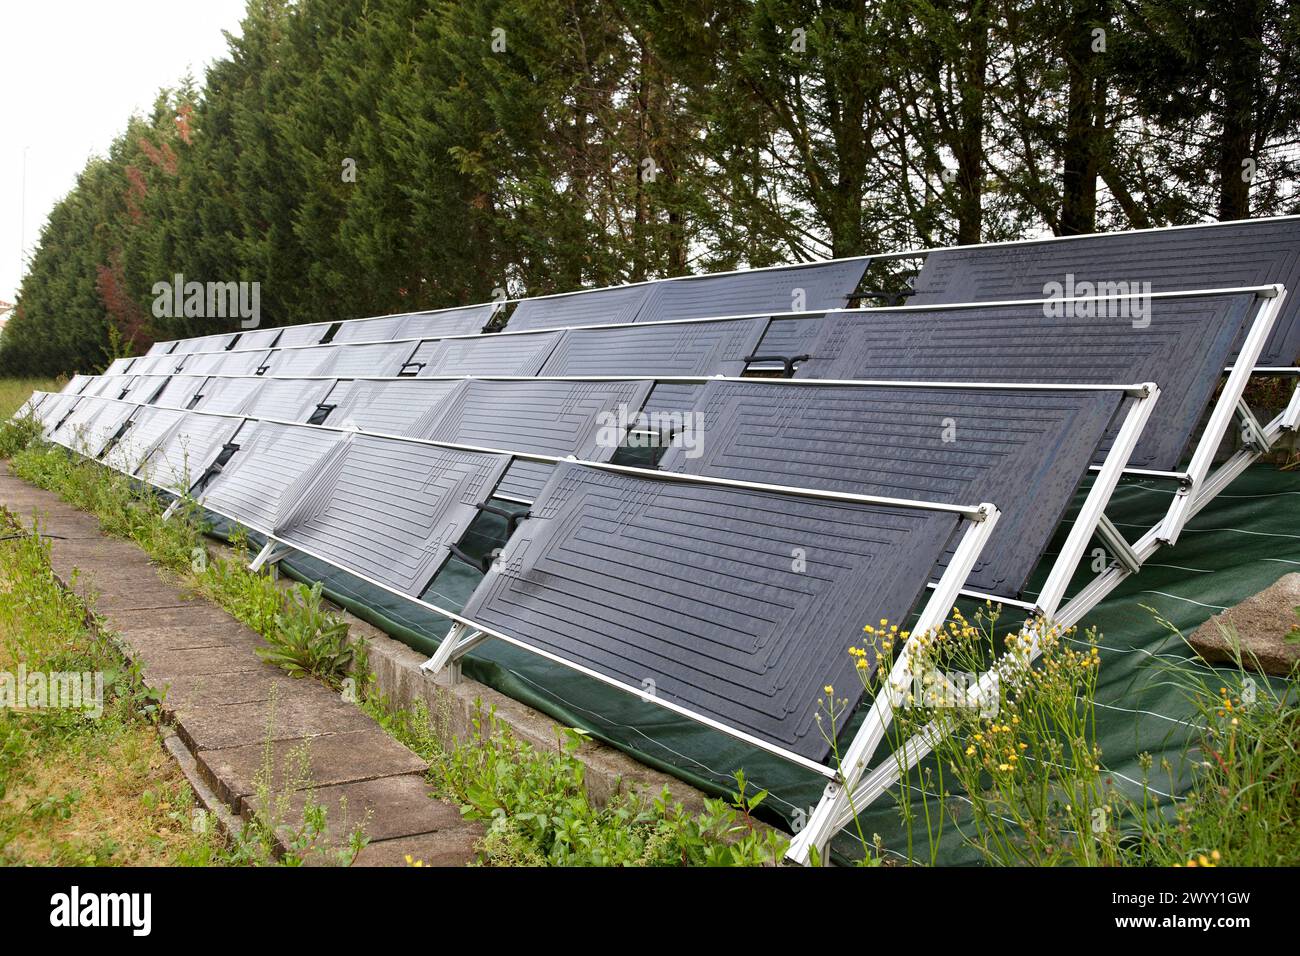 Panneaux solaires thermodynamiques, conditionnement de serres, Neiker-Tecnalia, Parc technologique de Biscaye, Derio, pays Basque, Espagne. Banque D'Images